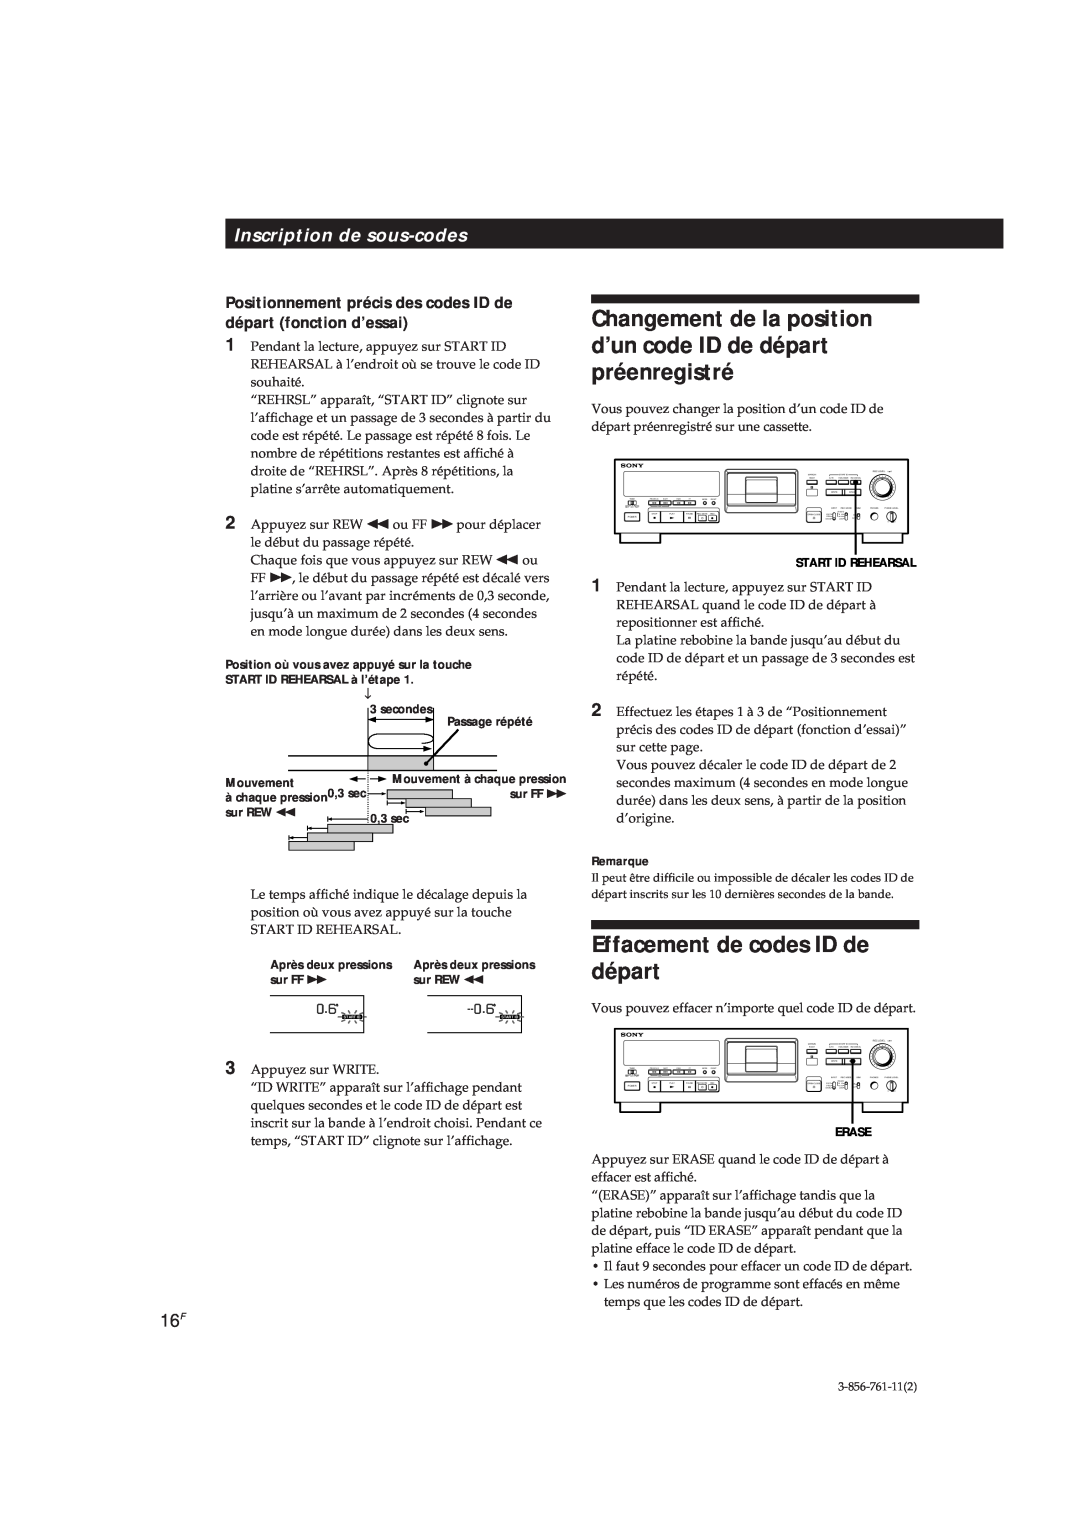 Sony DTC-A6 operating instructions Effacement de codes ID de départ, Inscription de sous-codes, 0.6S, Remarque 